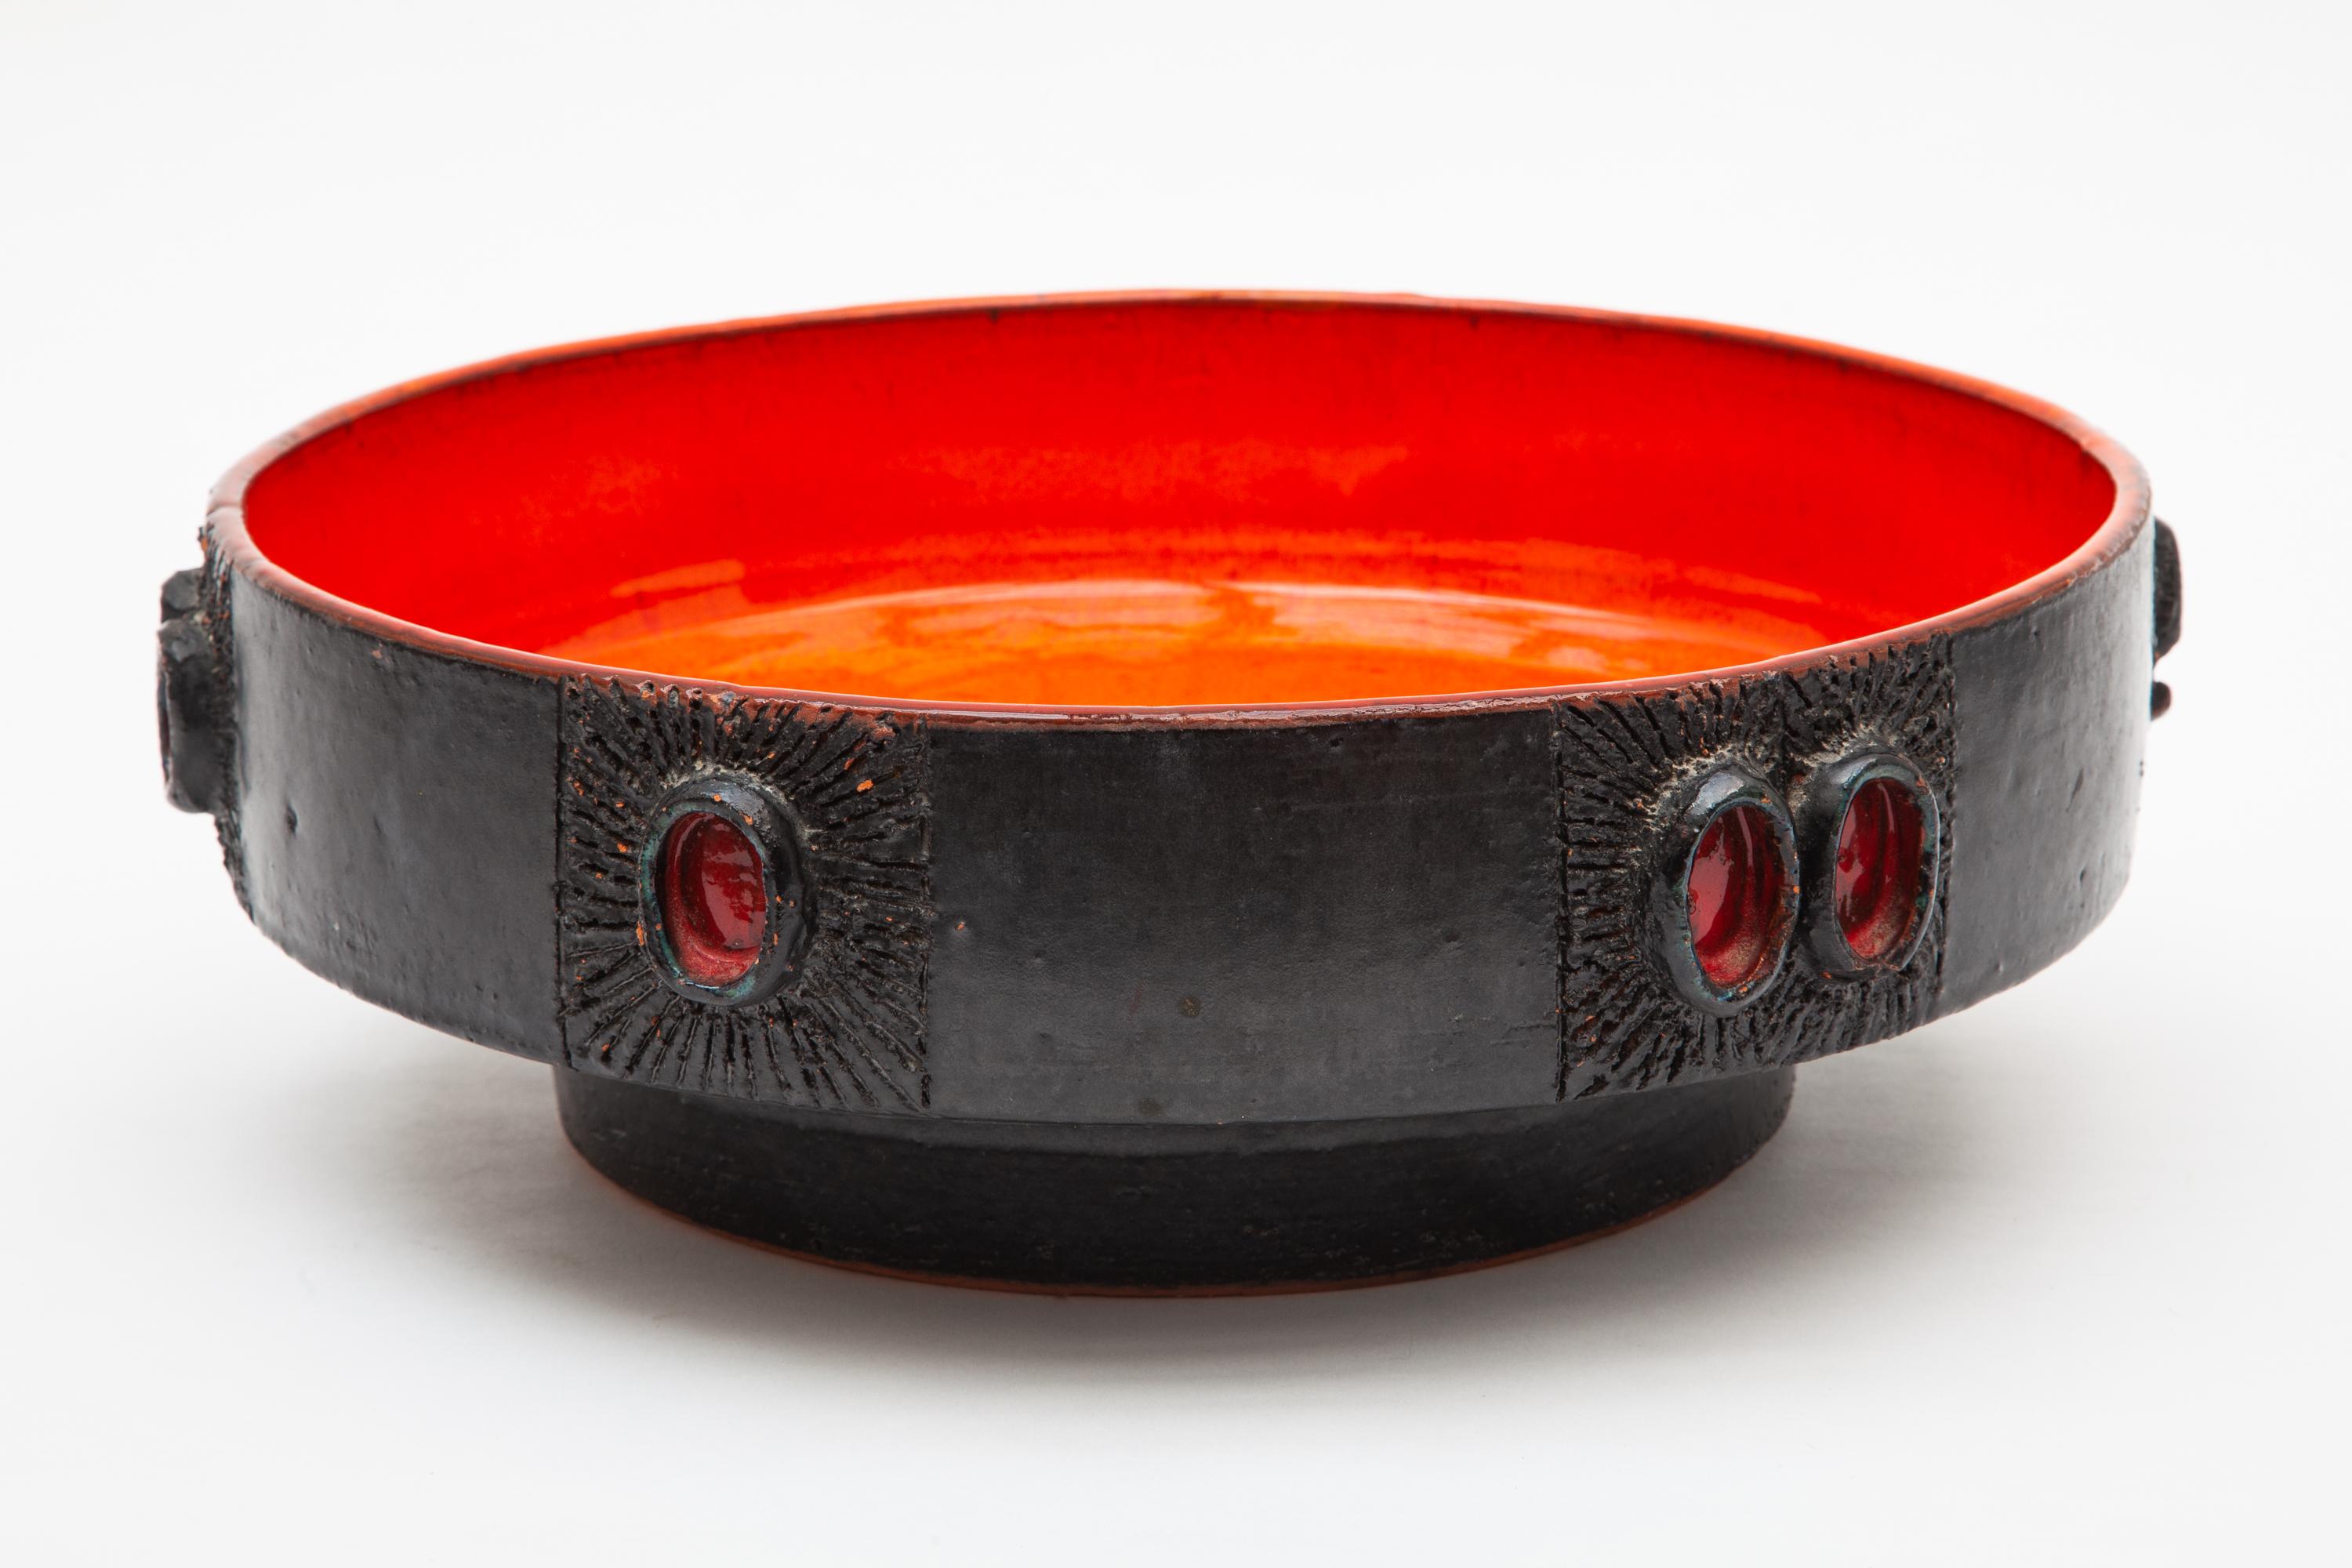 Belgian Vintage Amphora Red Glazed Ceramic Bowl Designed by Rogier Vandeweghe, 1960s